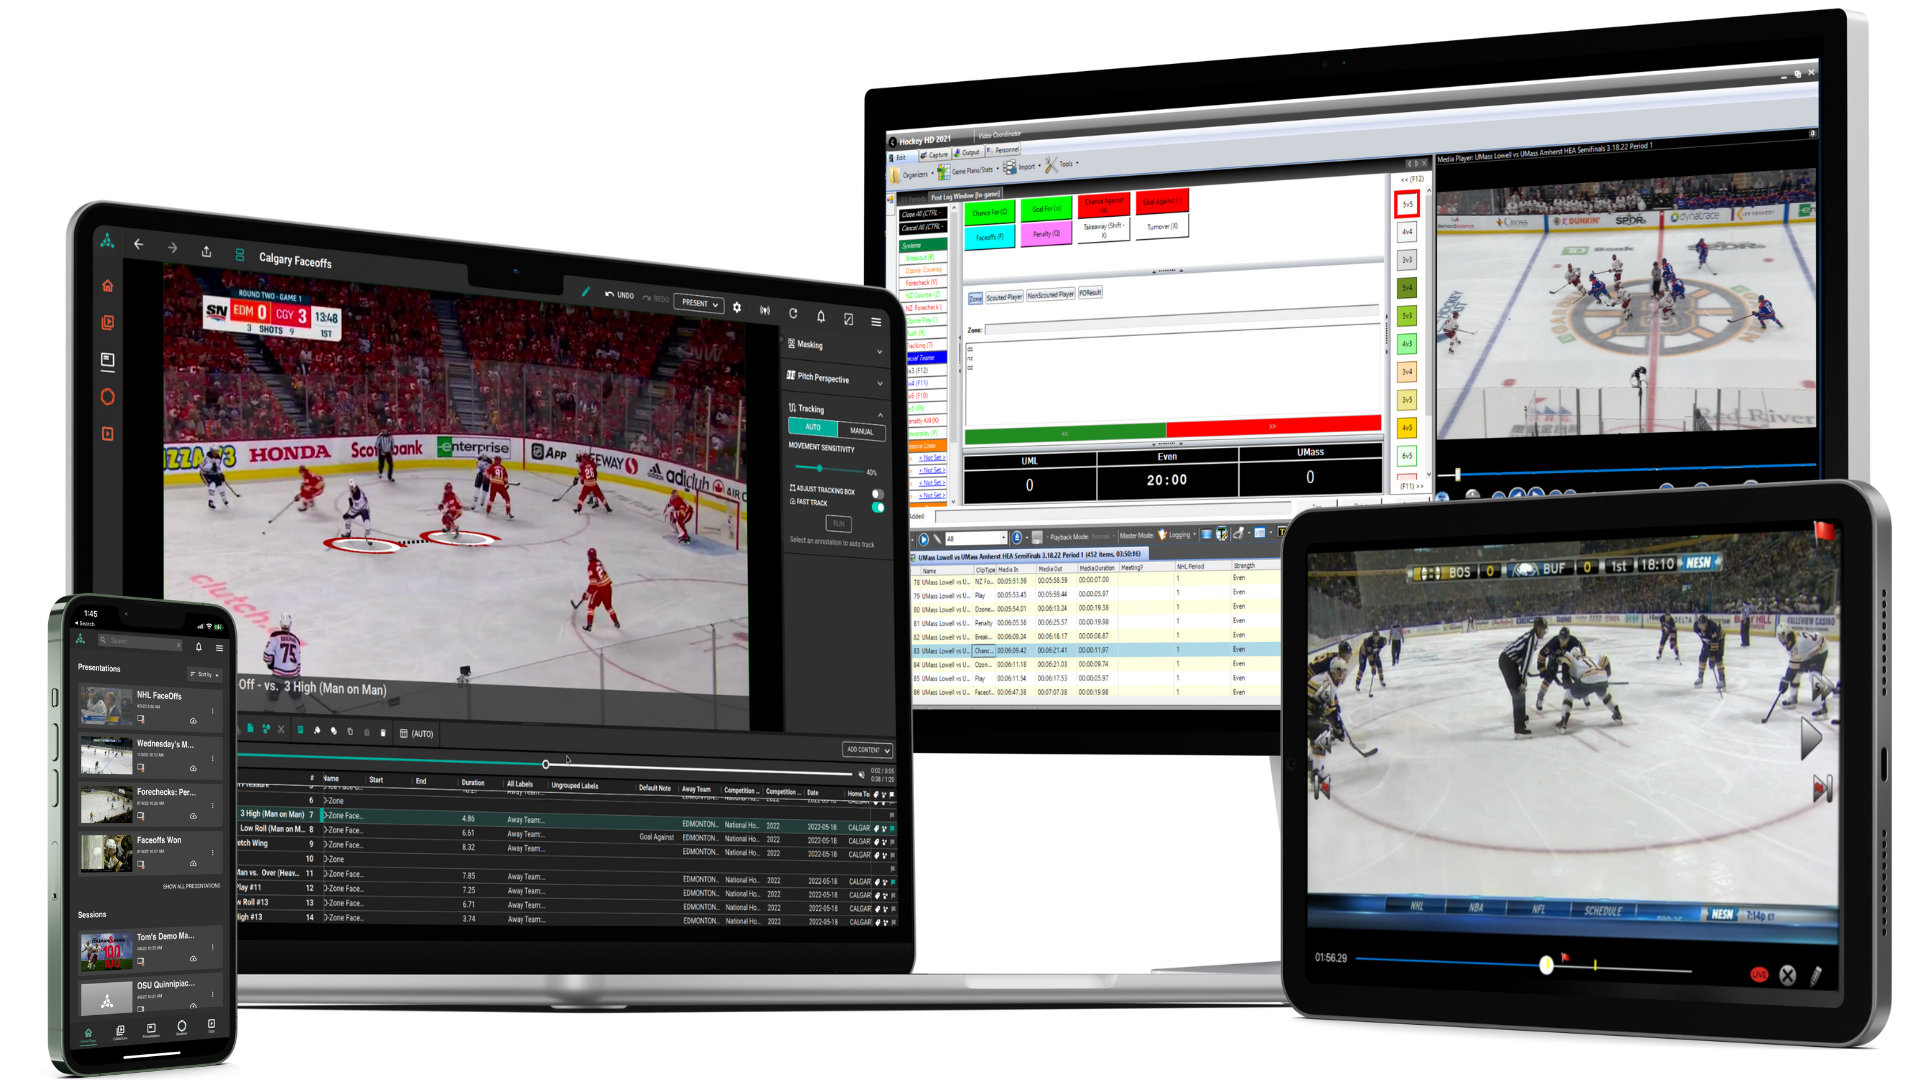 Catapult Pro Video: modernste Videoanalyse-Software für Eishockey. Optimierte Coaching-Tools, die Teams mithilfe von Videoanalyse zum Sieg verhelfen: Zusammenarbeit zwischen Thunder Hockey und iBench Mock